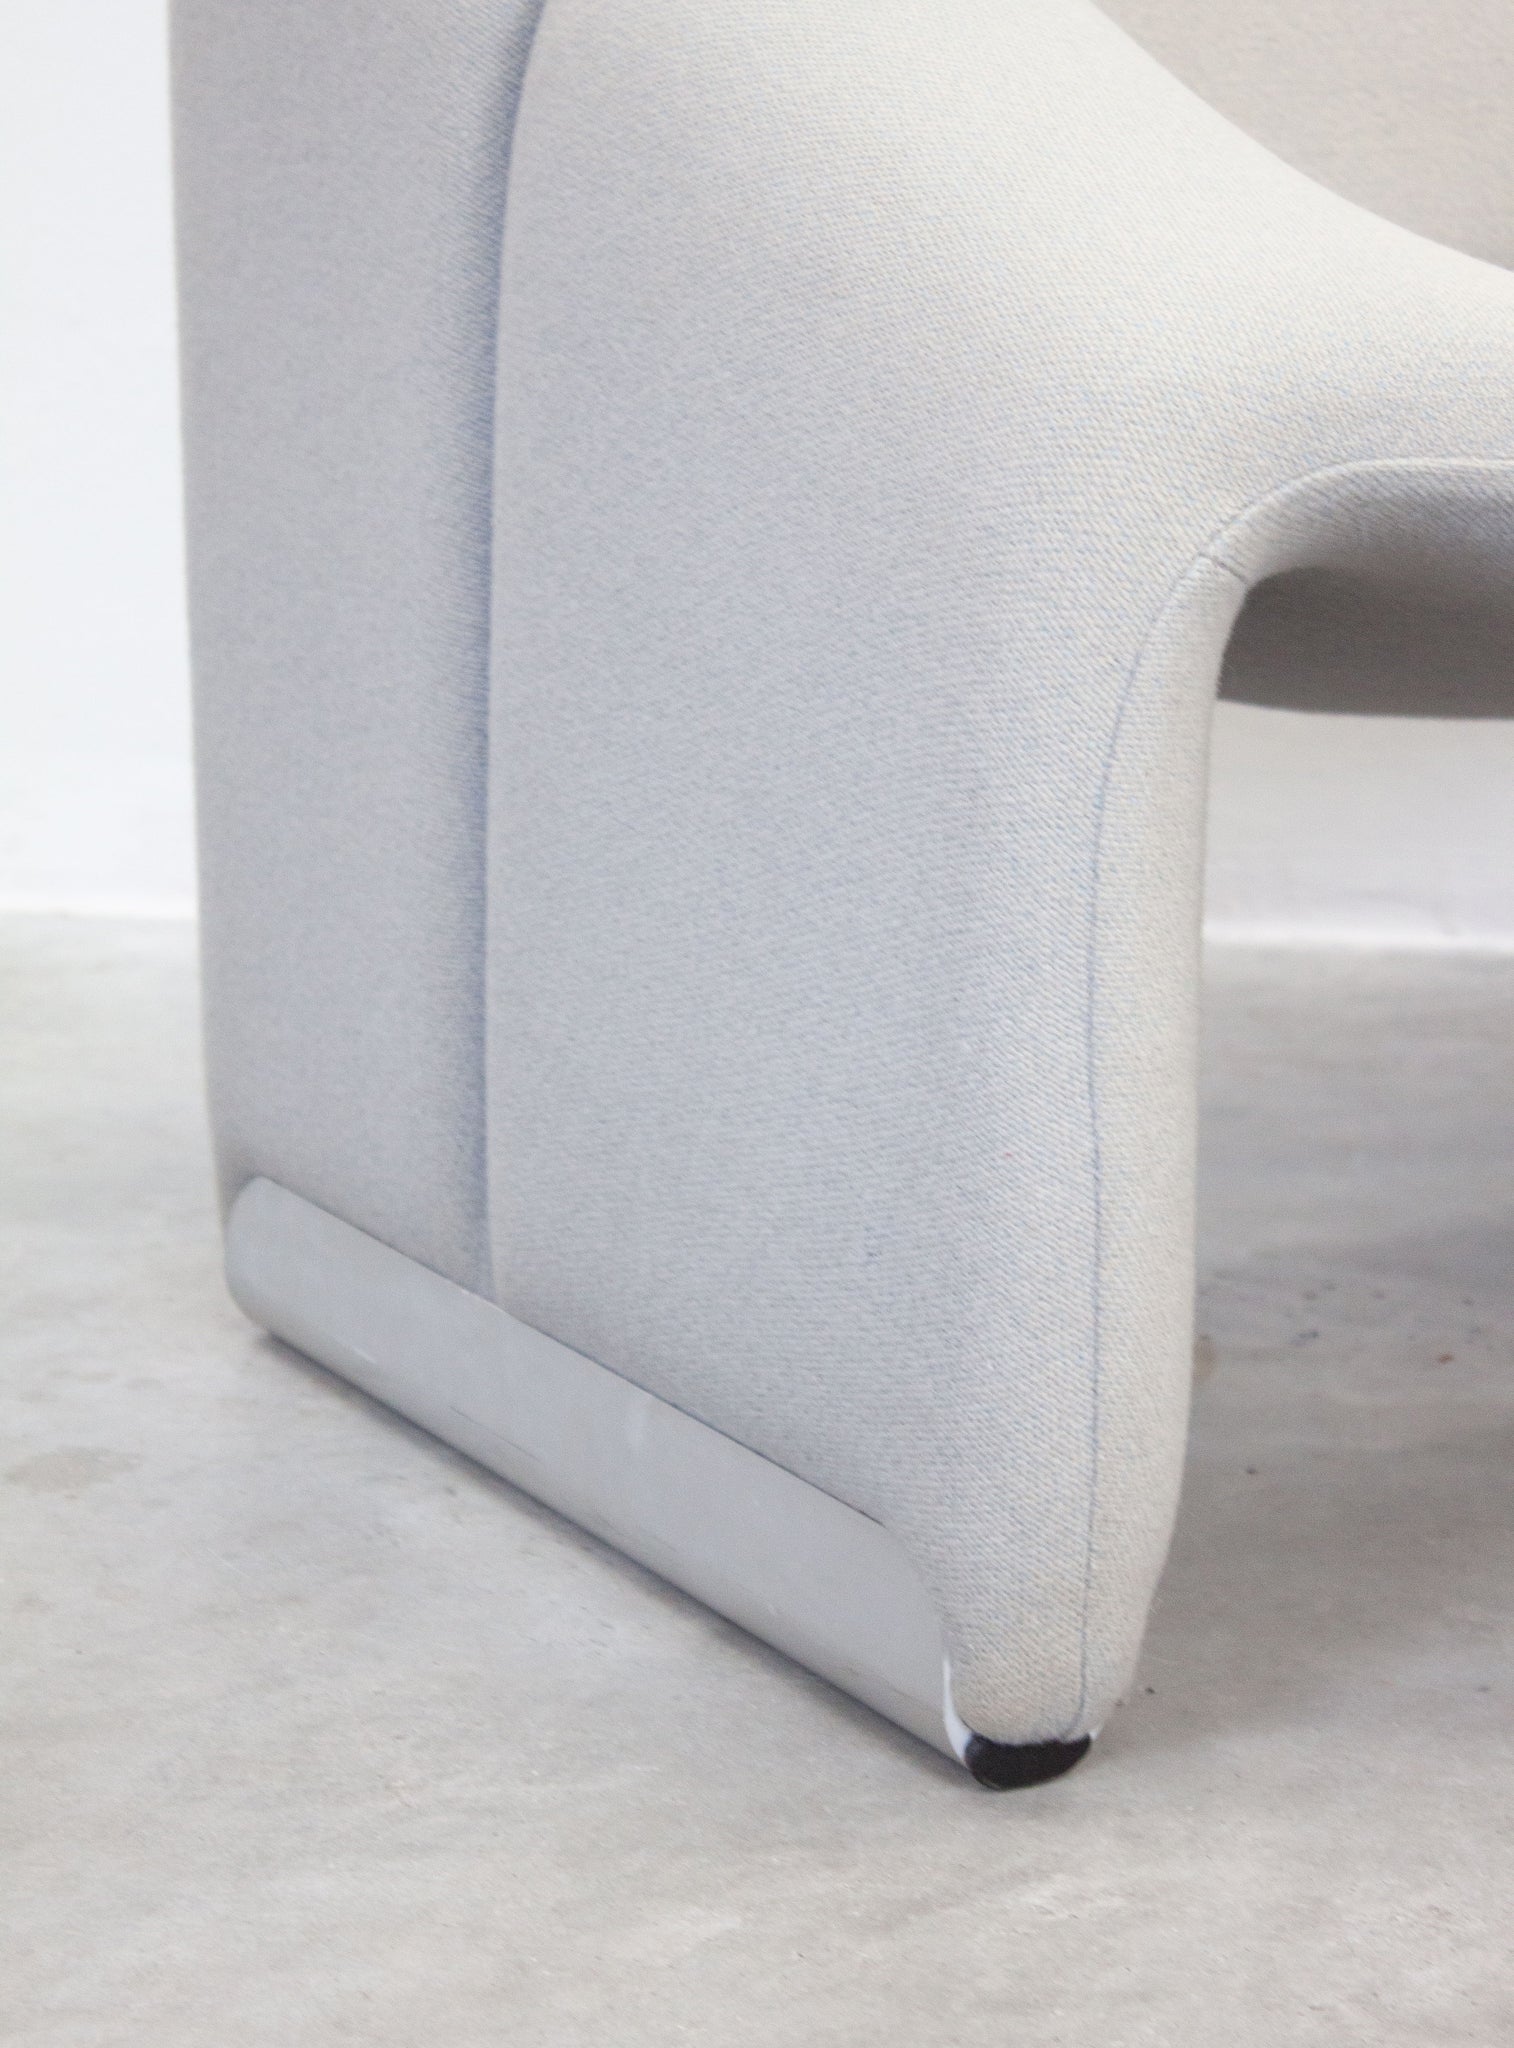 Artifort Groovy F598 Lounge Chair by Pierre Paulin (Light Grey)